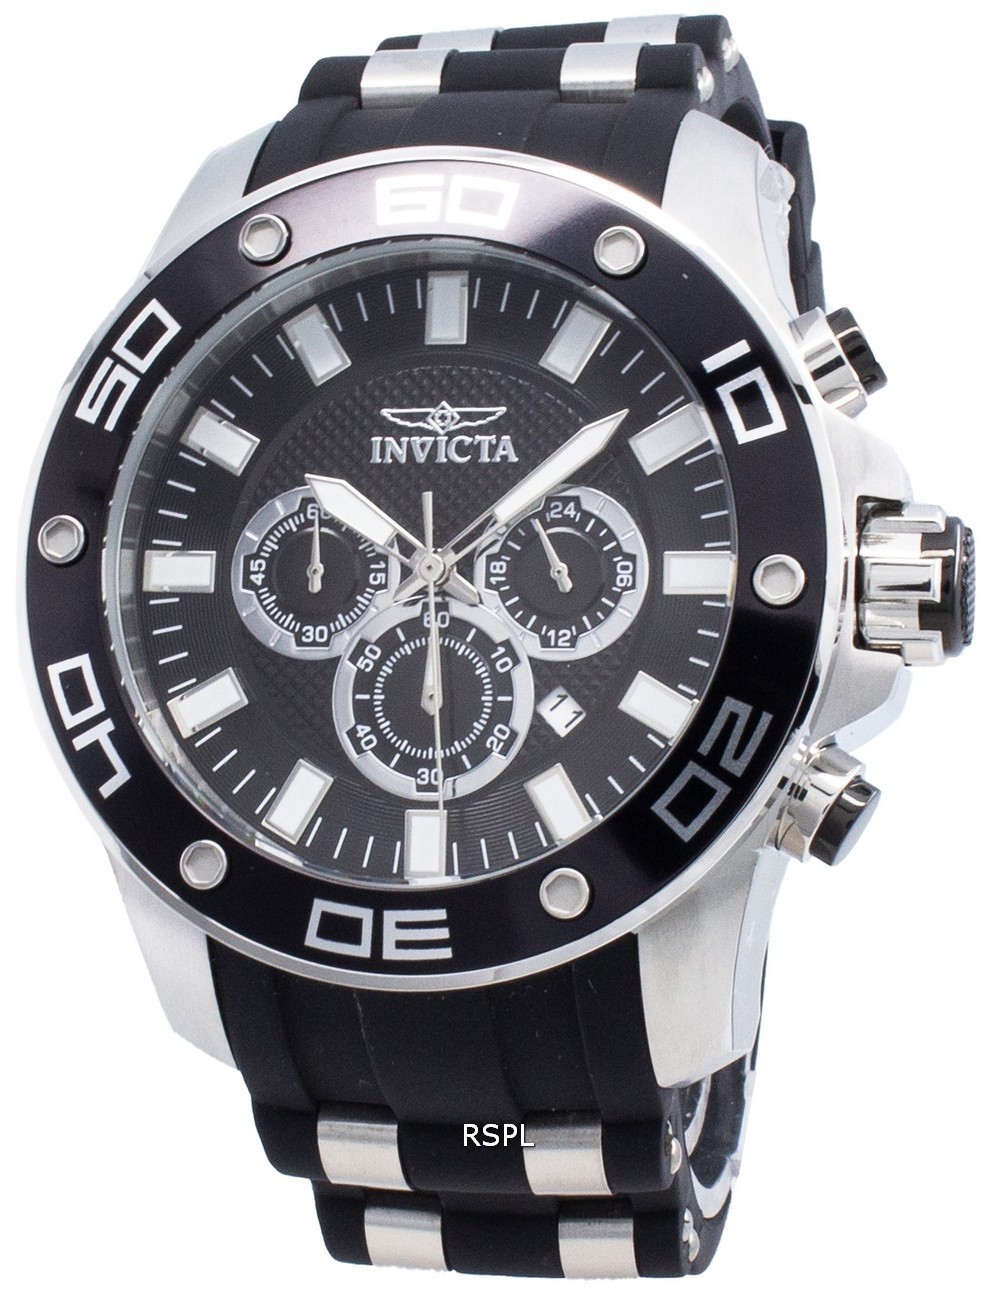 Invicta Pro Diver 26084 Chronograph Quartz Men's Watch | eBay